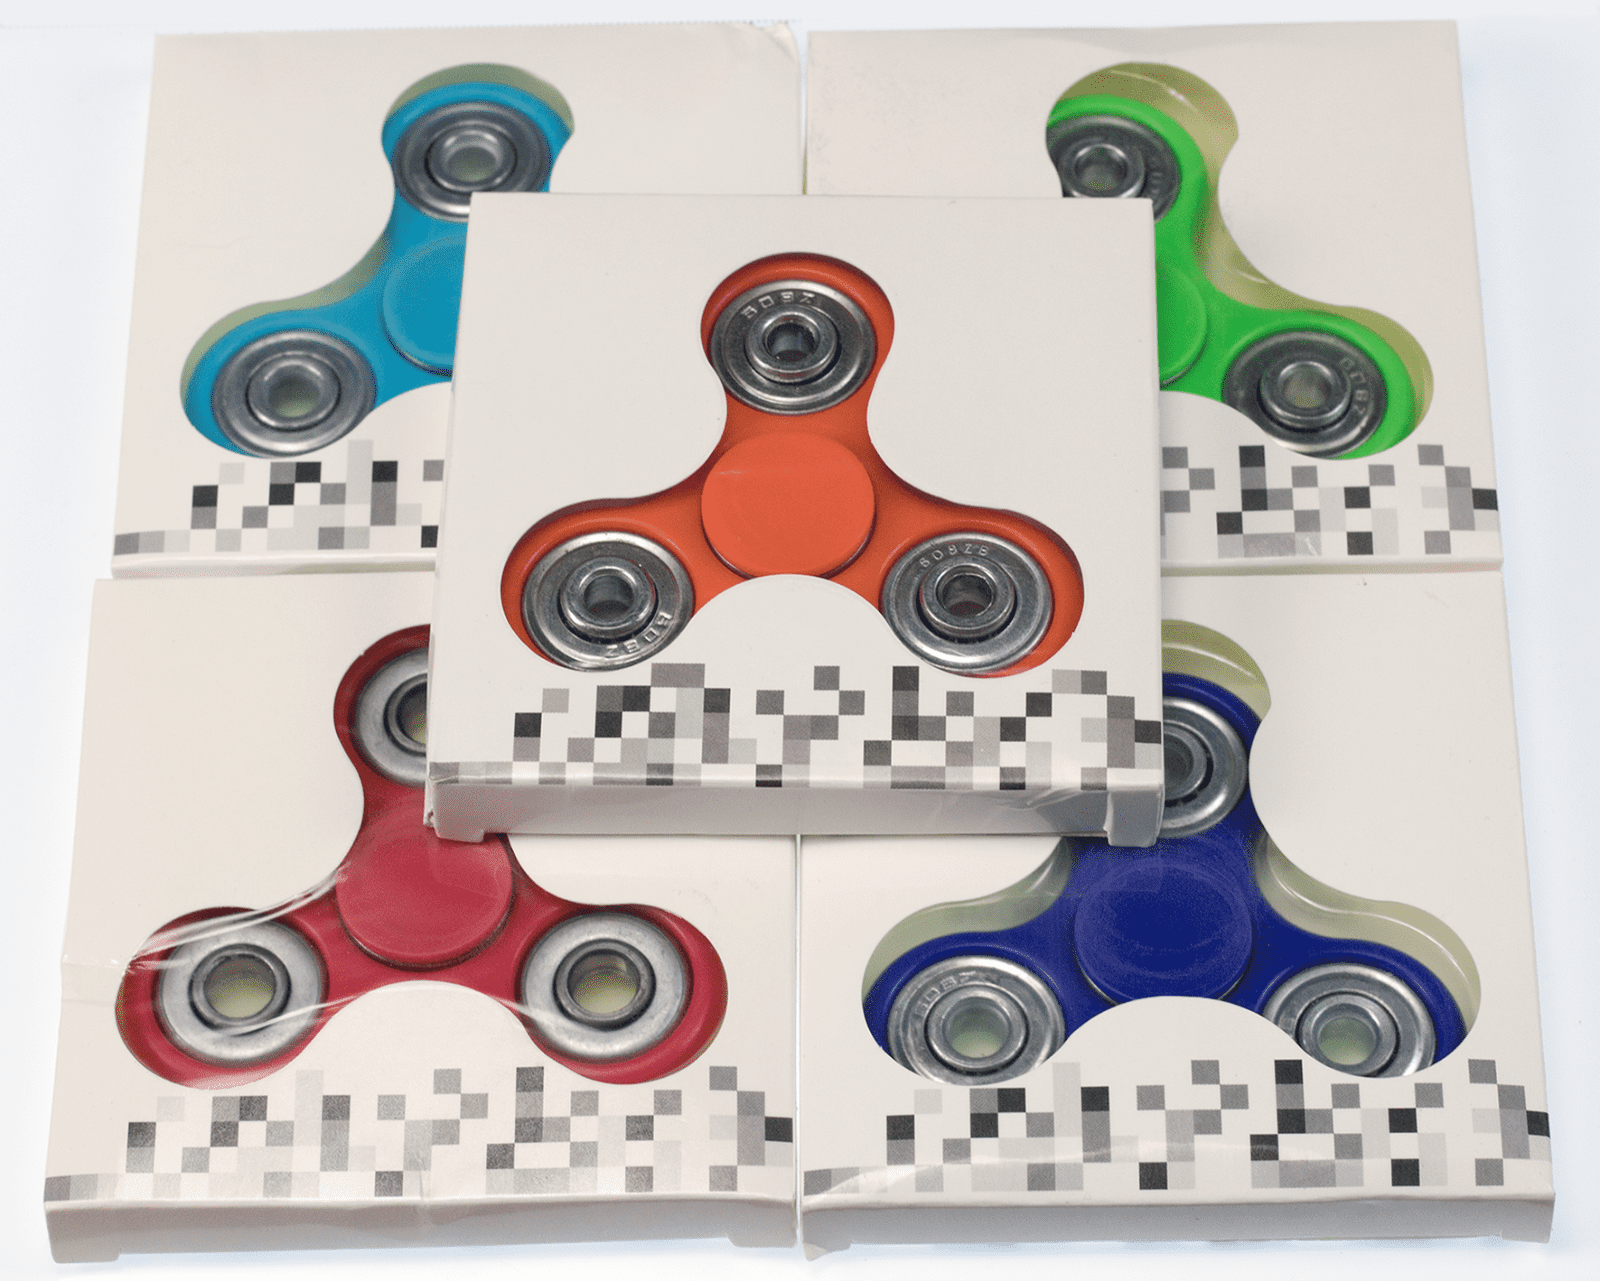 5x Tri-Spinner Fidget Toy Ceramic EDC Hand Finger Spinner Camo NEW Green 